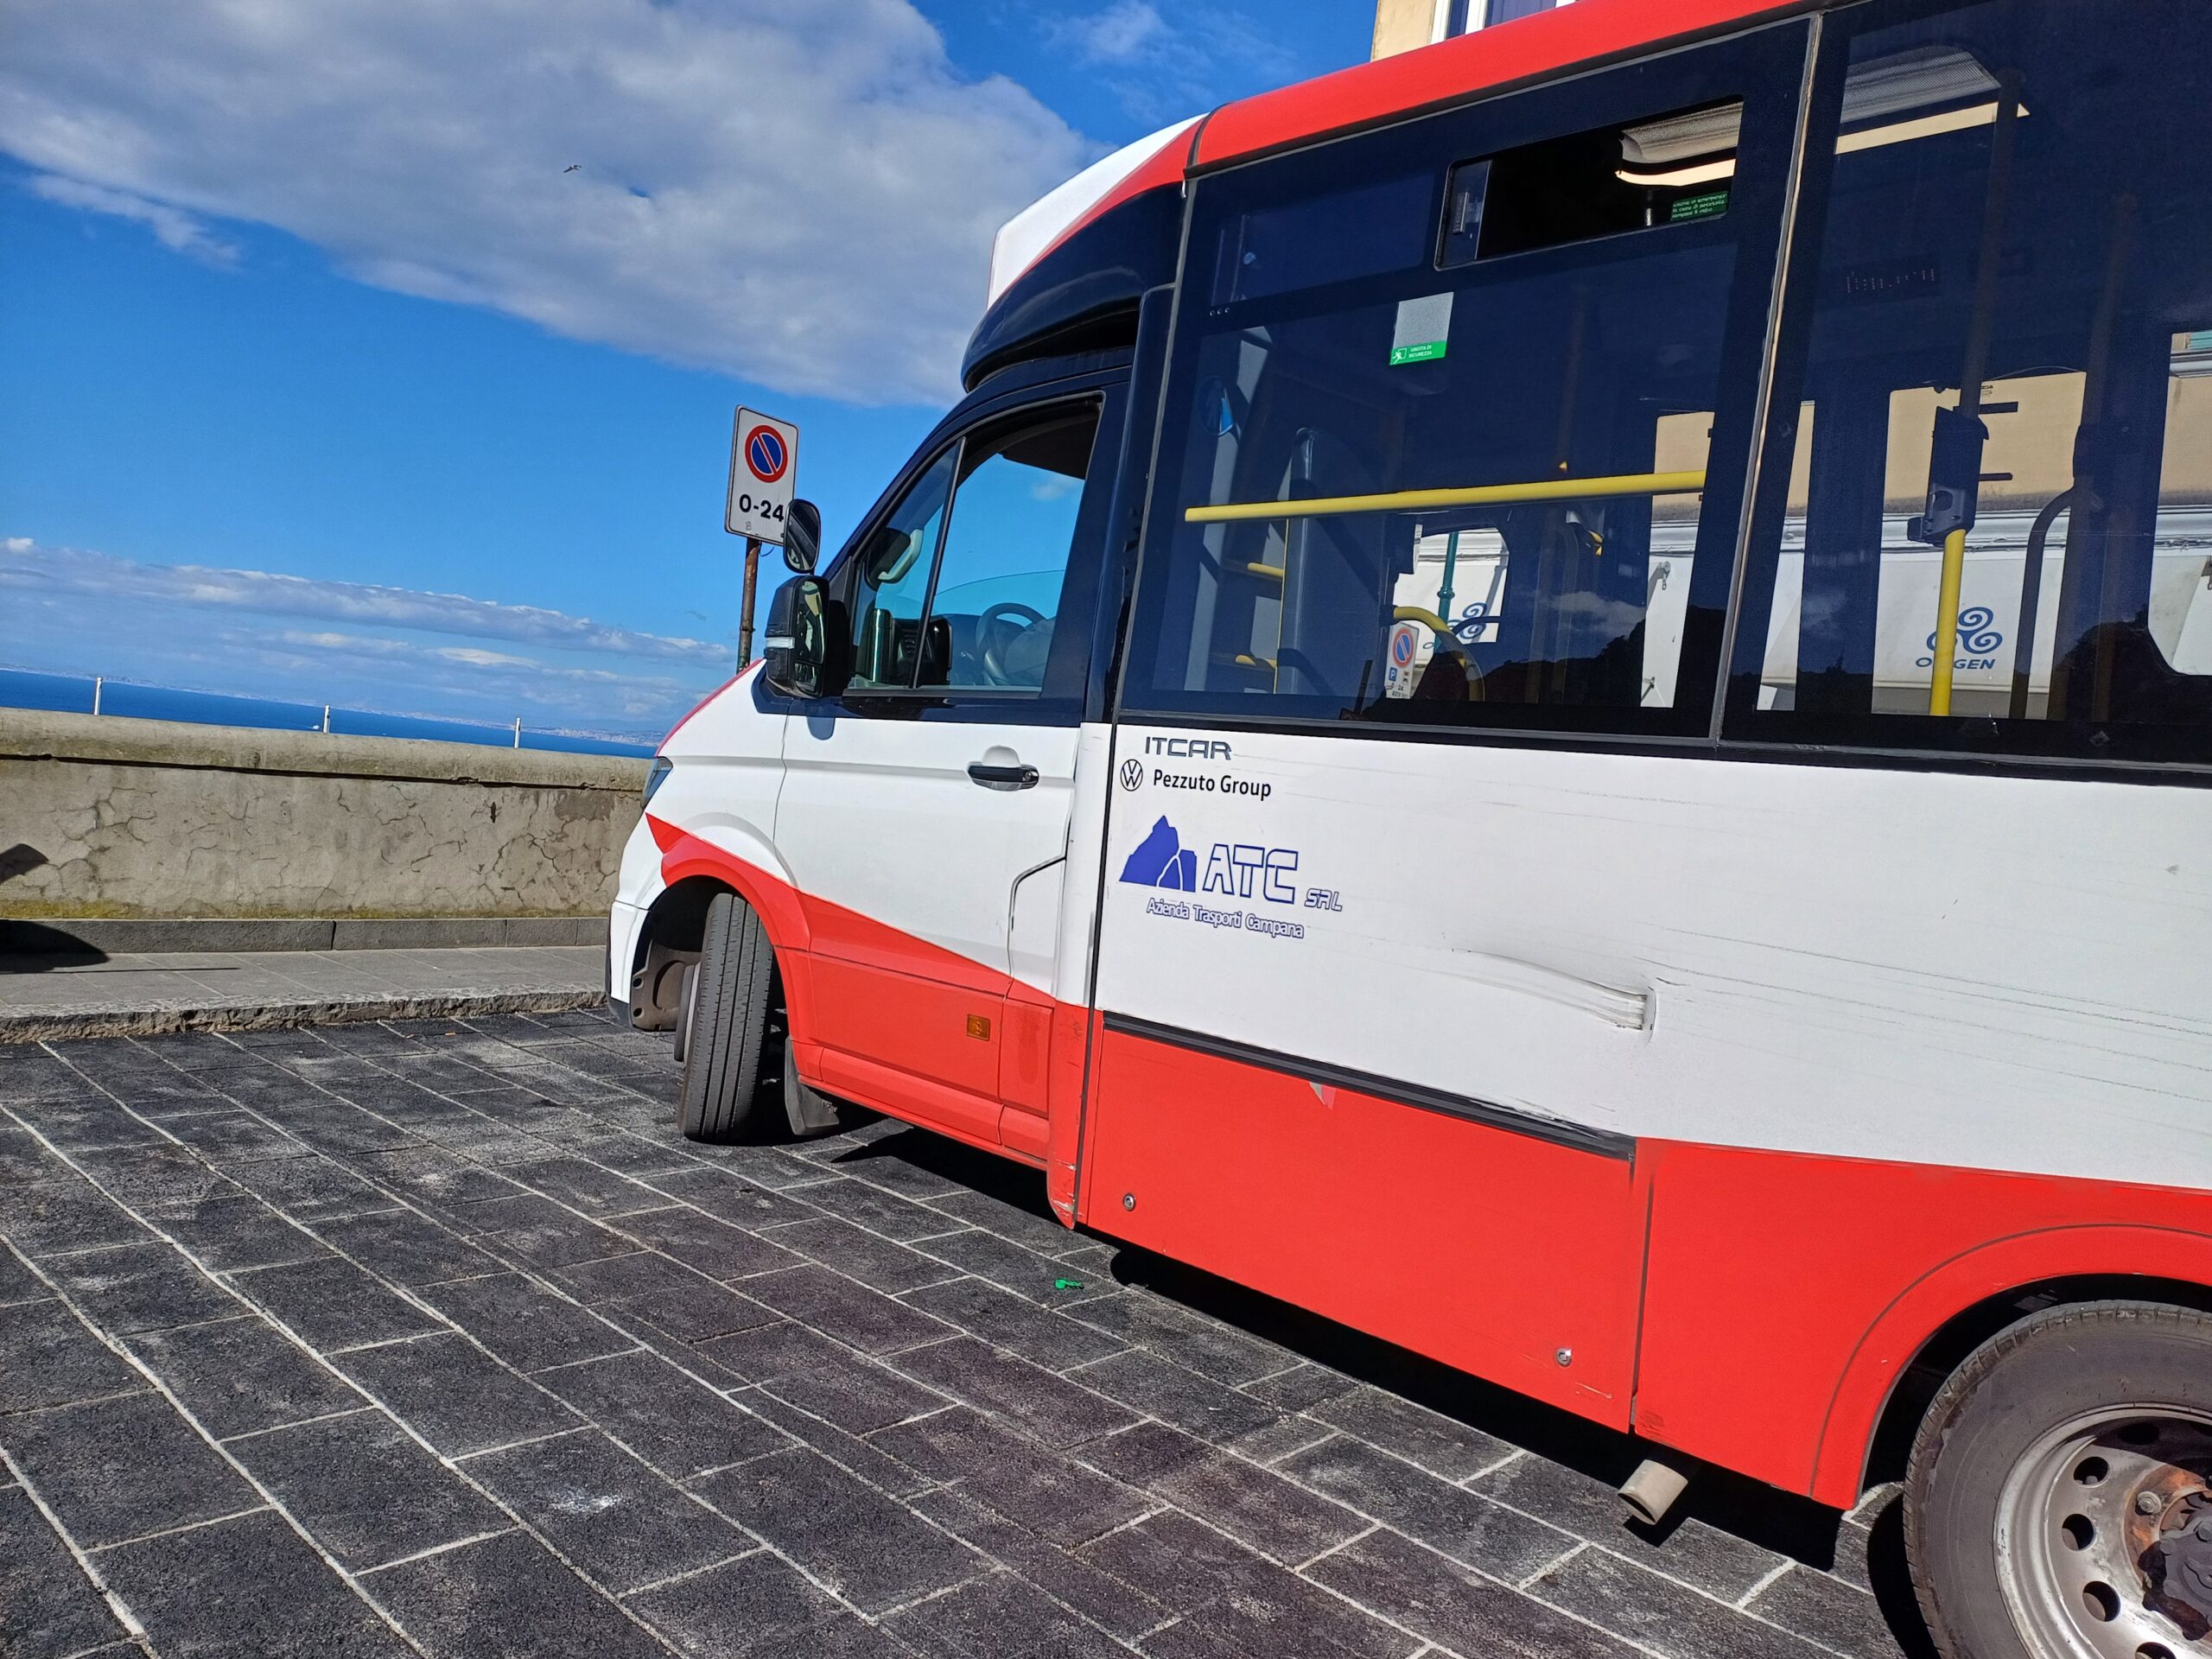 Trasporto pubblico locale: le amministrazioni di Capri e Anacapri chiedono alla Città Metropolitana la revoca del servizio all’Atc e l’attivazione delle procedure per un nuovo affidamento